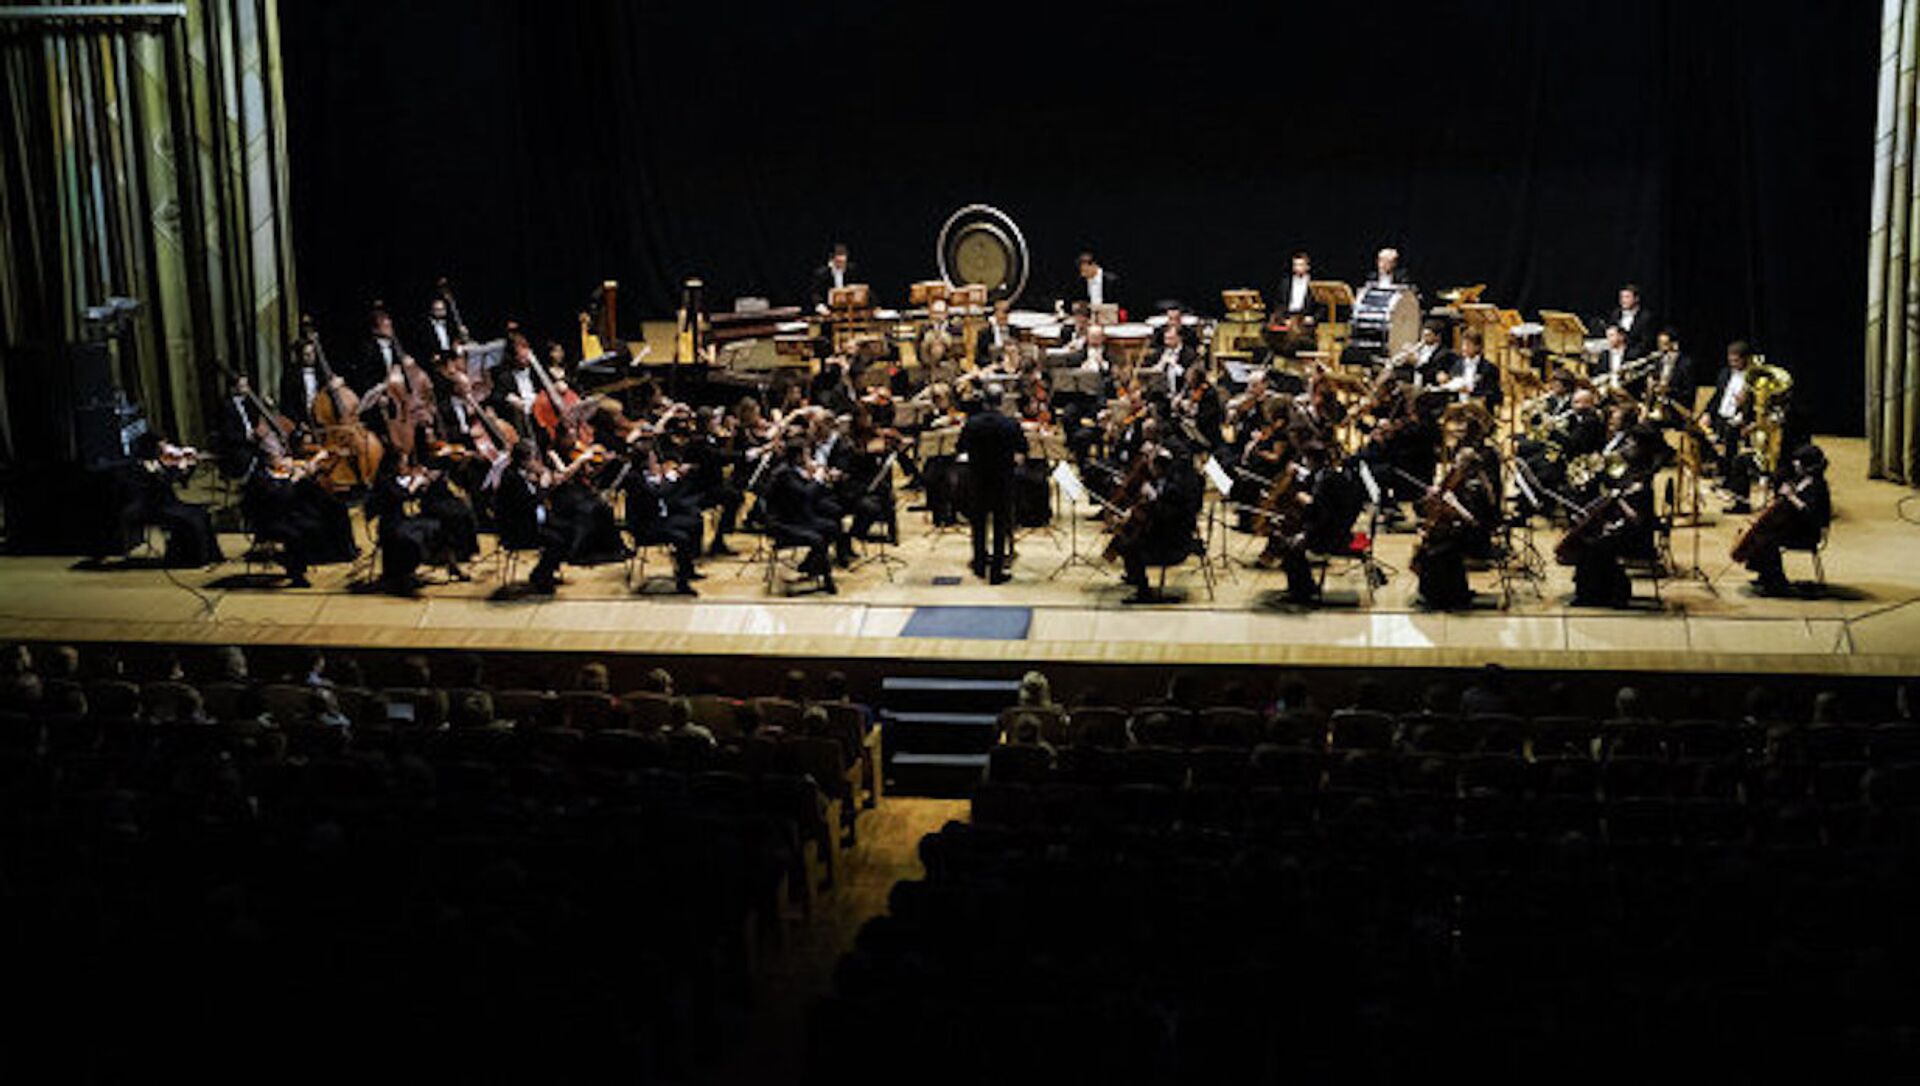 Мариинский театр конкурс в оркестр